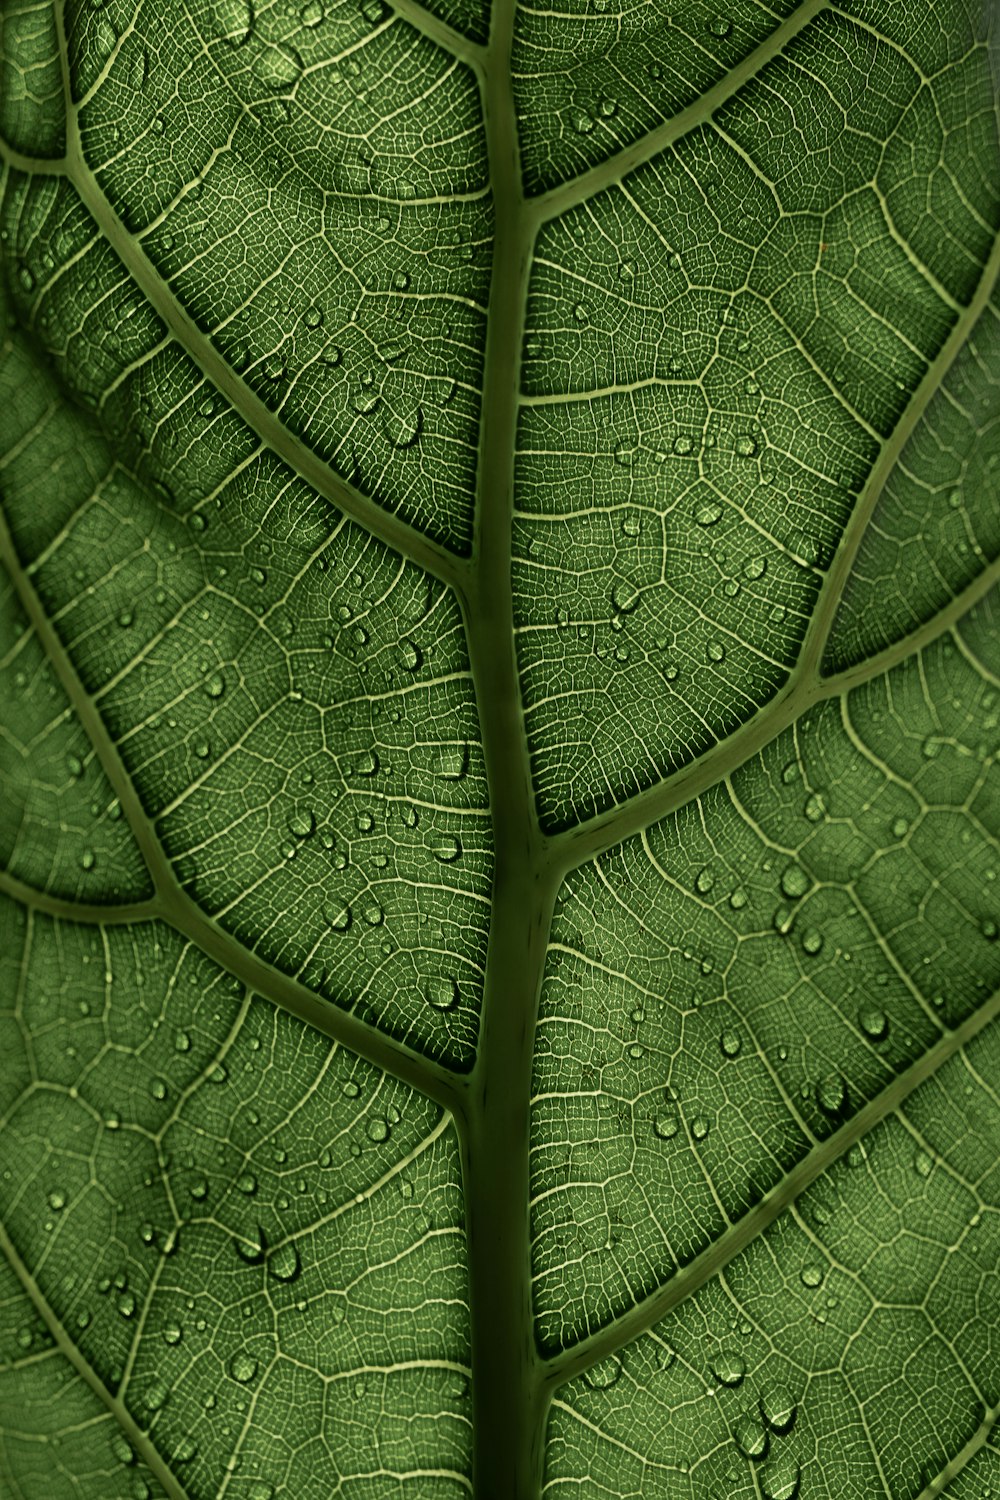 물방울이 있는 녹색 잎사귀 클로즈업